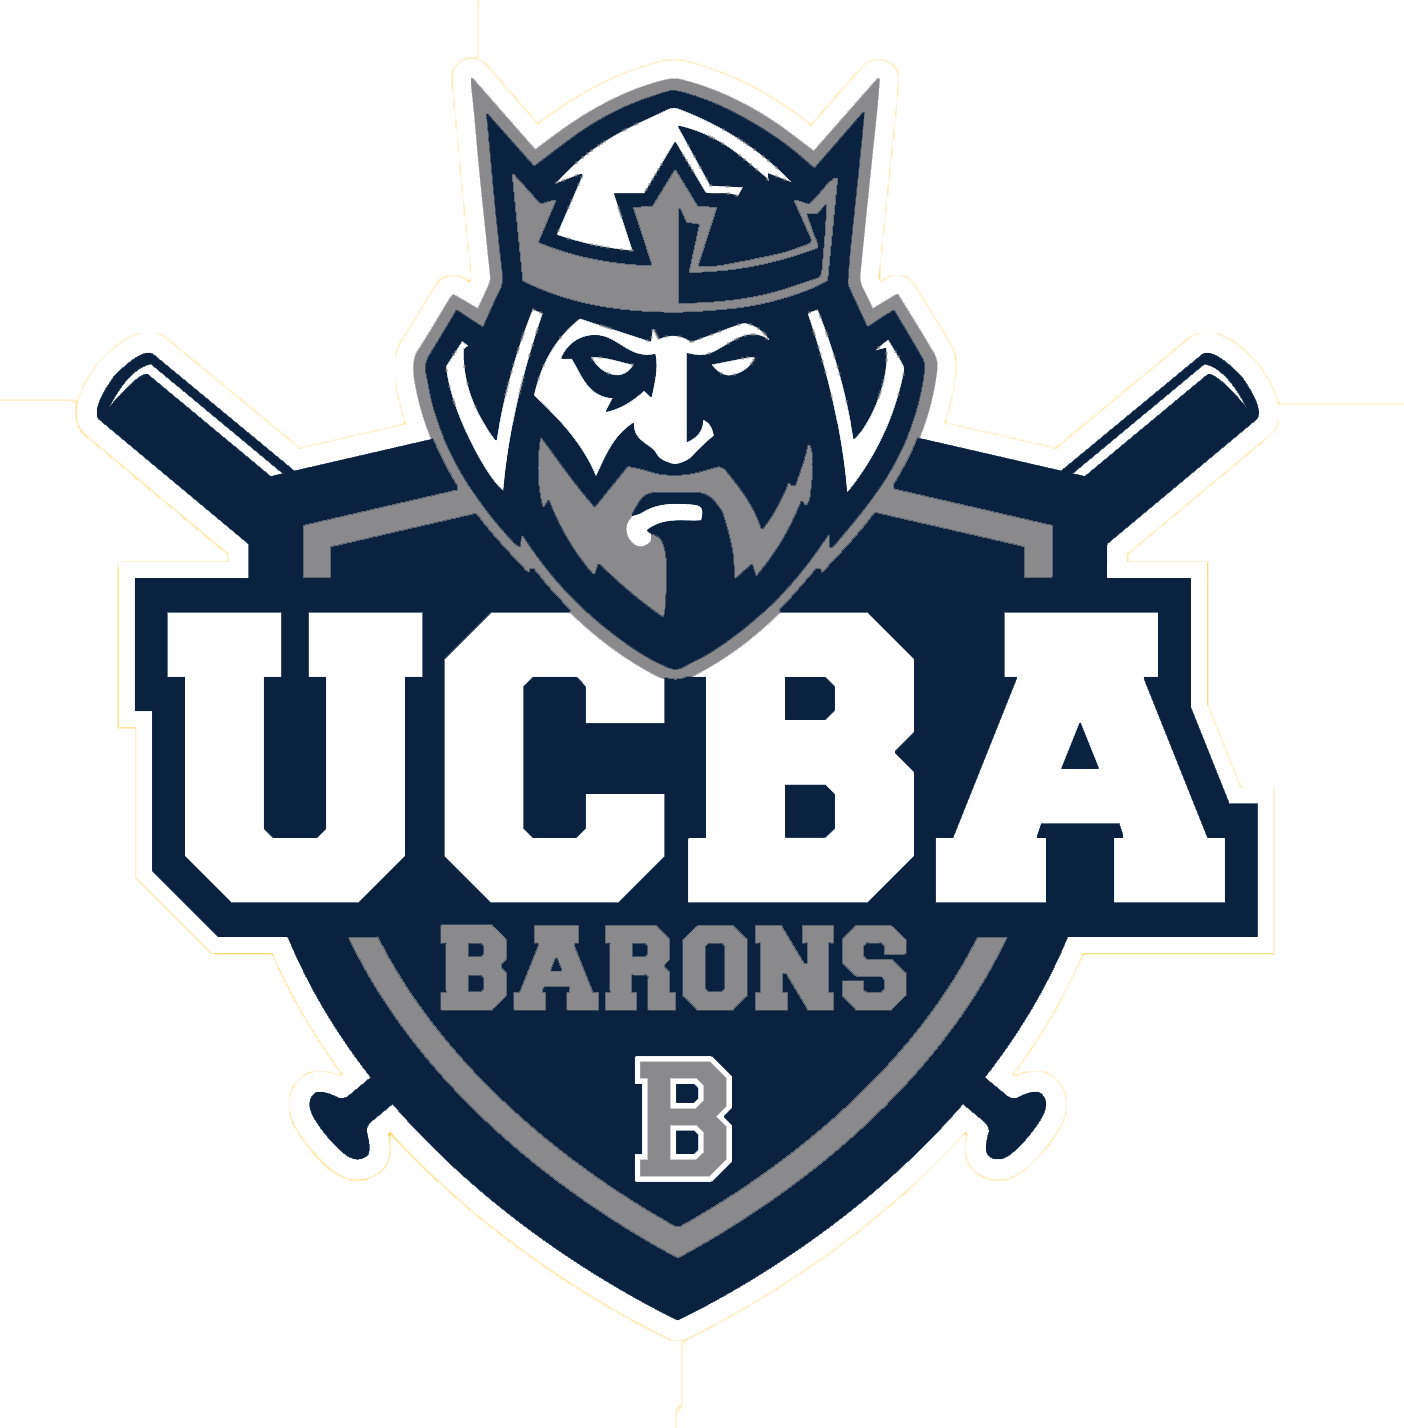 UCBA Barons